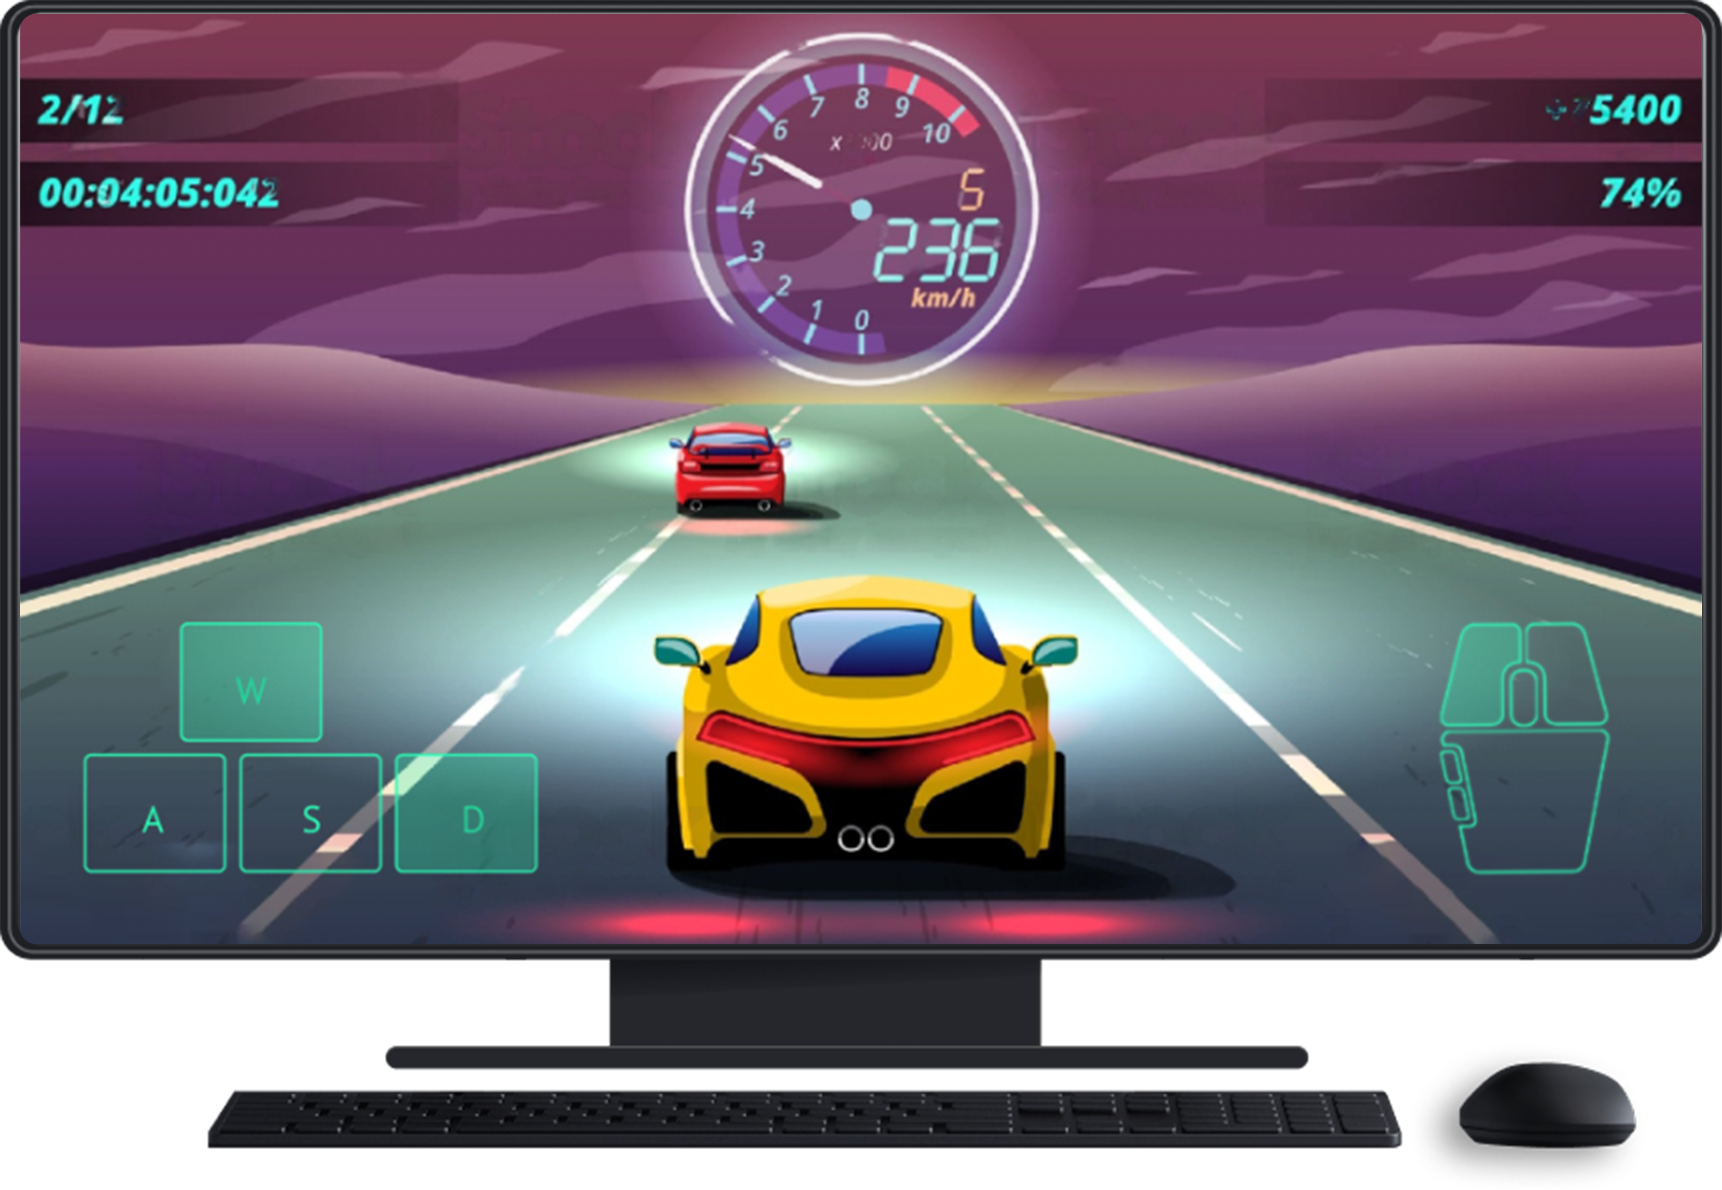 Komputer stacjonarny z klawiaturą i myszą. Gra jest widoczna na ekranie. Ekran dotykowy do sterowania kierunkiem jazdy i myszą.